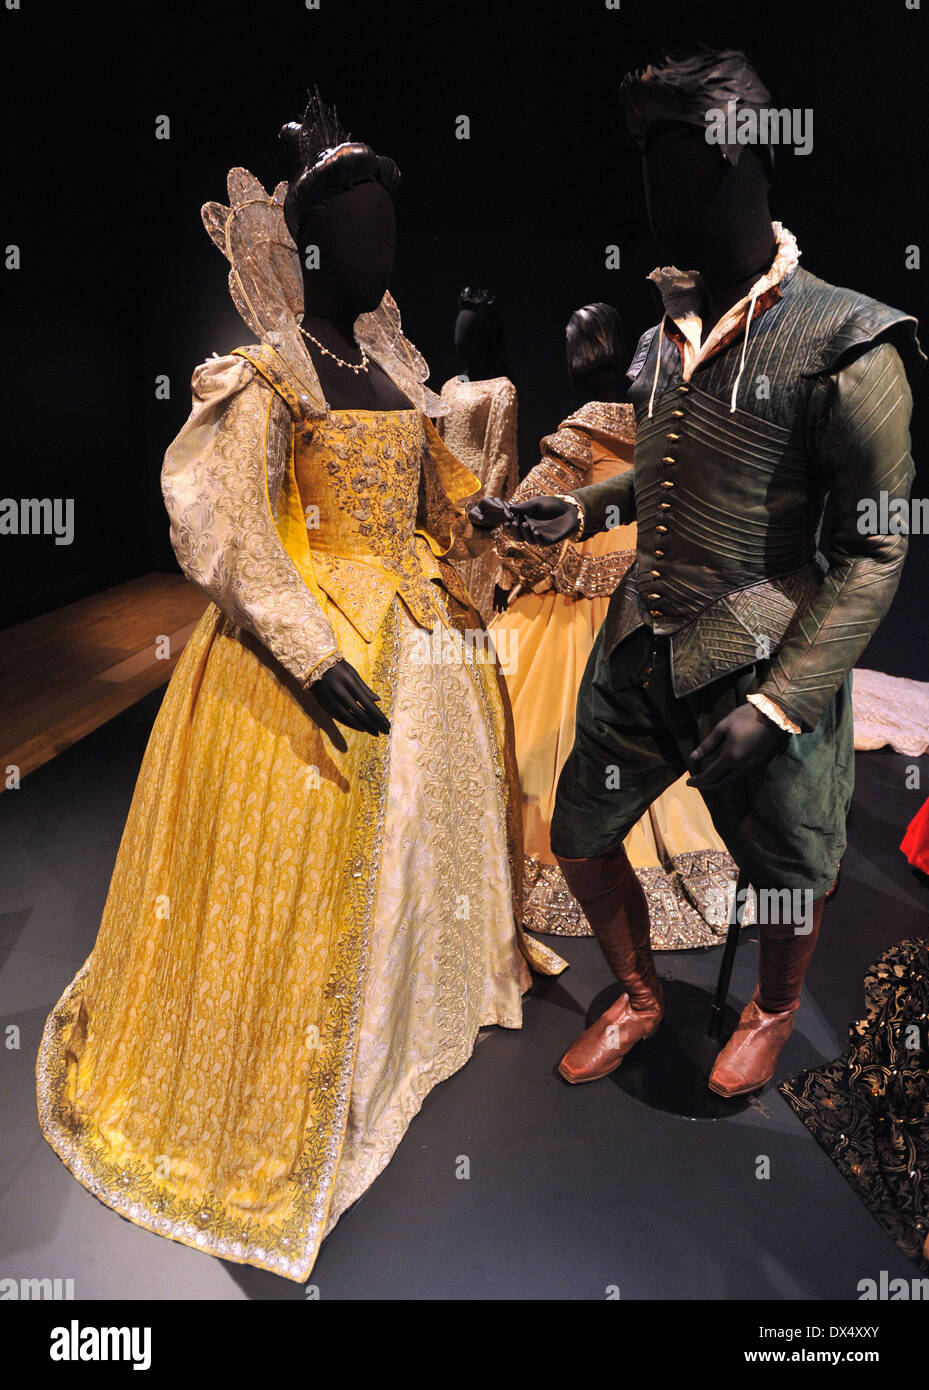 Shakespeare in Love - Gwyneth Paltrow come Viola de Lesseps e Joseph Fiennes come Shakespeare Costume di Hollywood - Premere view tenutosi presso il Victoria and Albert Museum. Londra, Inghilterra - 17.10.12 Dove: Londra, Regno Unito quando: 17 Ott 2012 Foto Stock